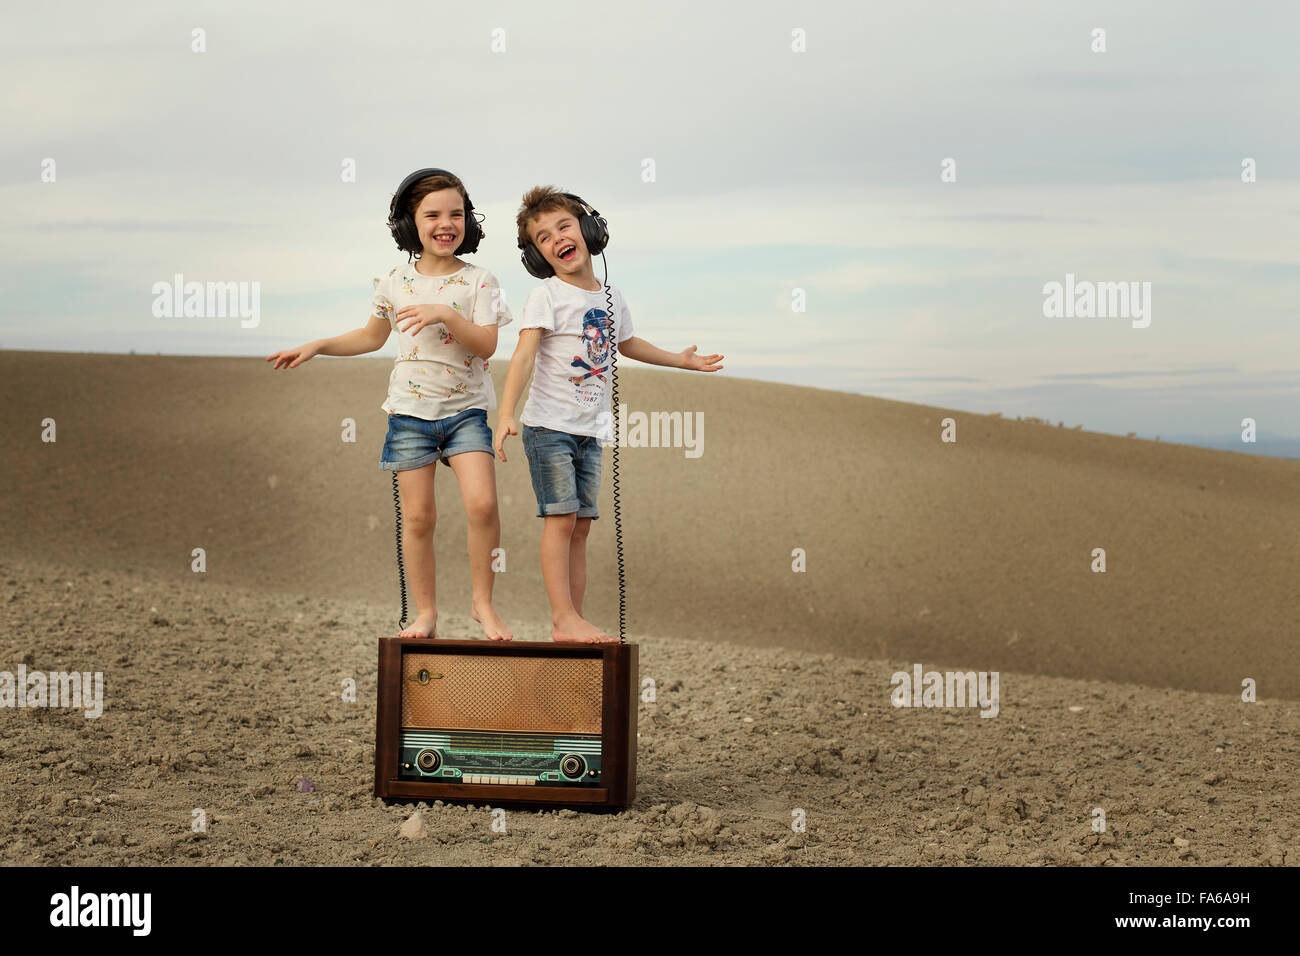 Garçon et fille dansant sur une vieille radio abandonnés Banque D'Images